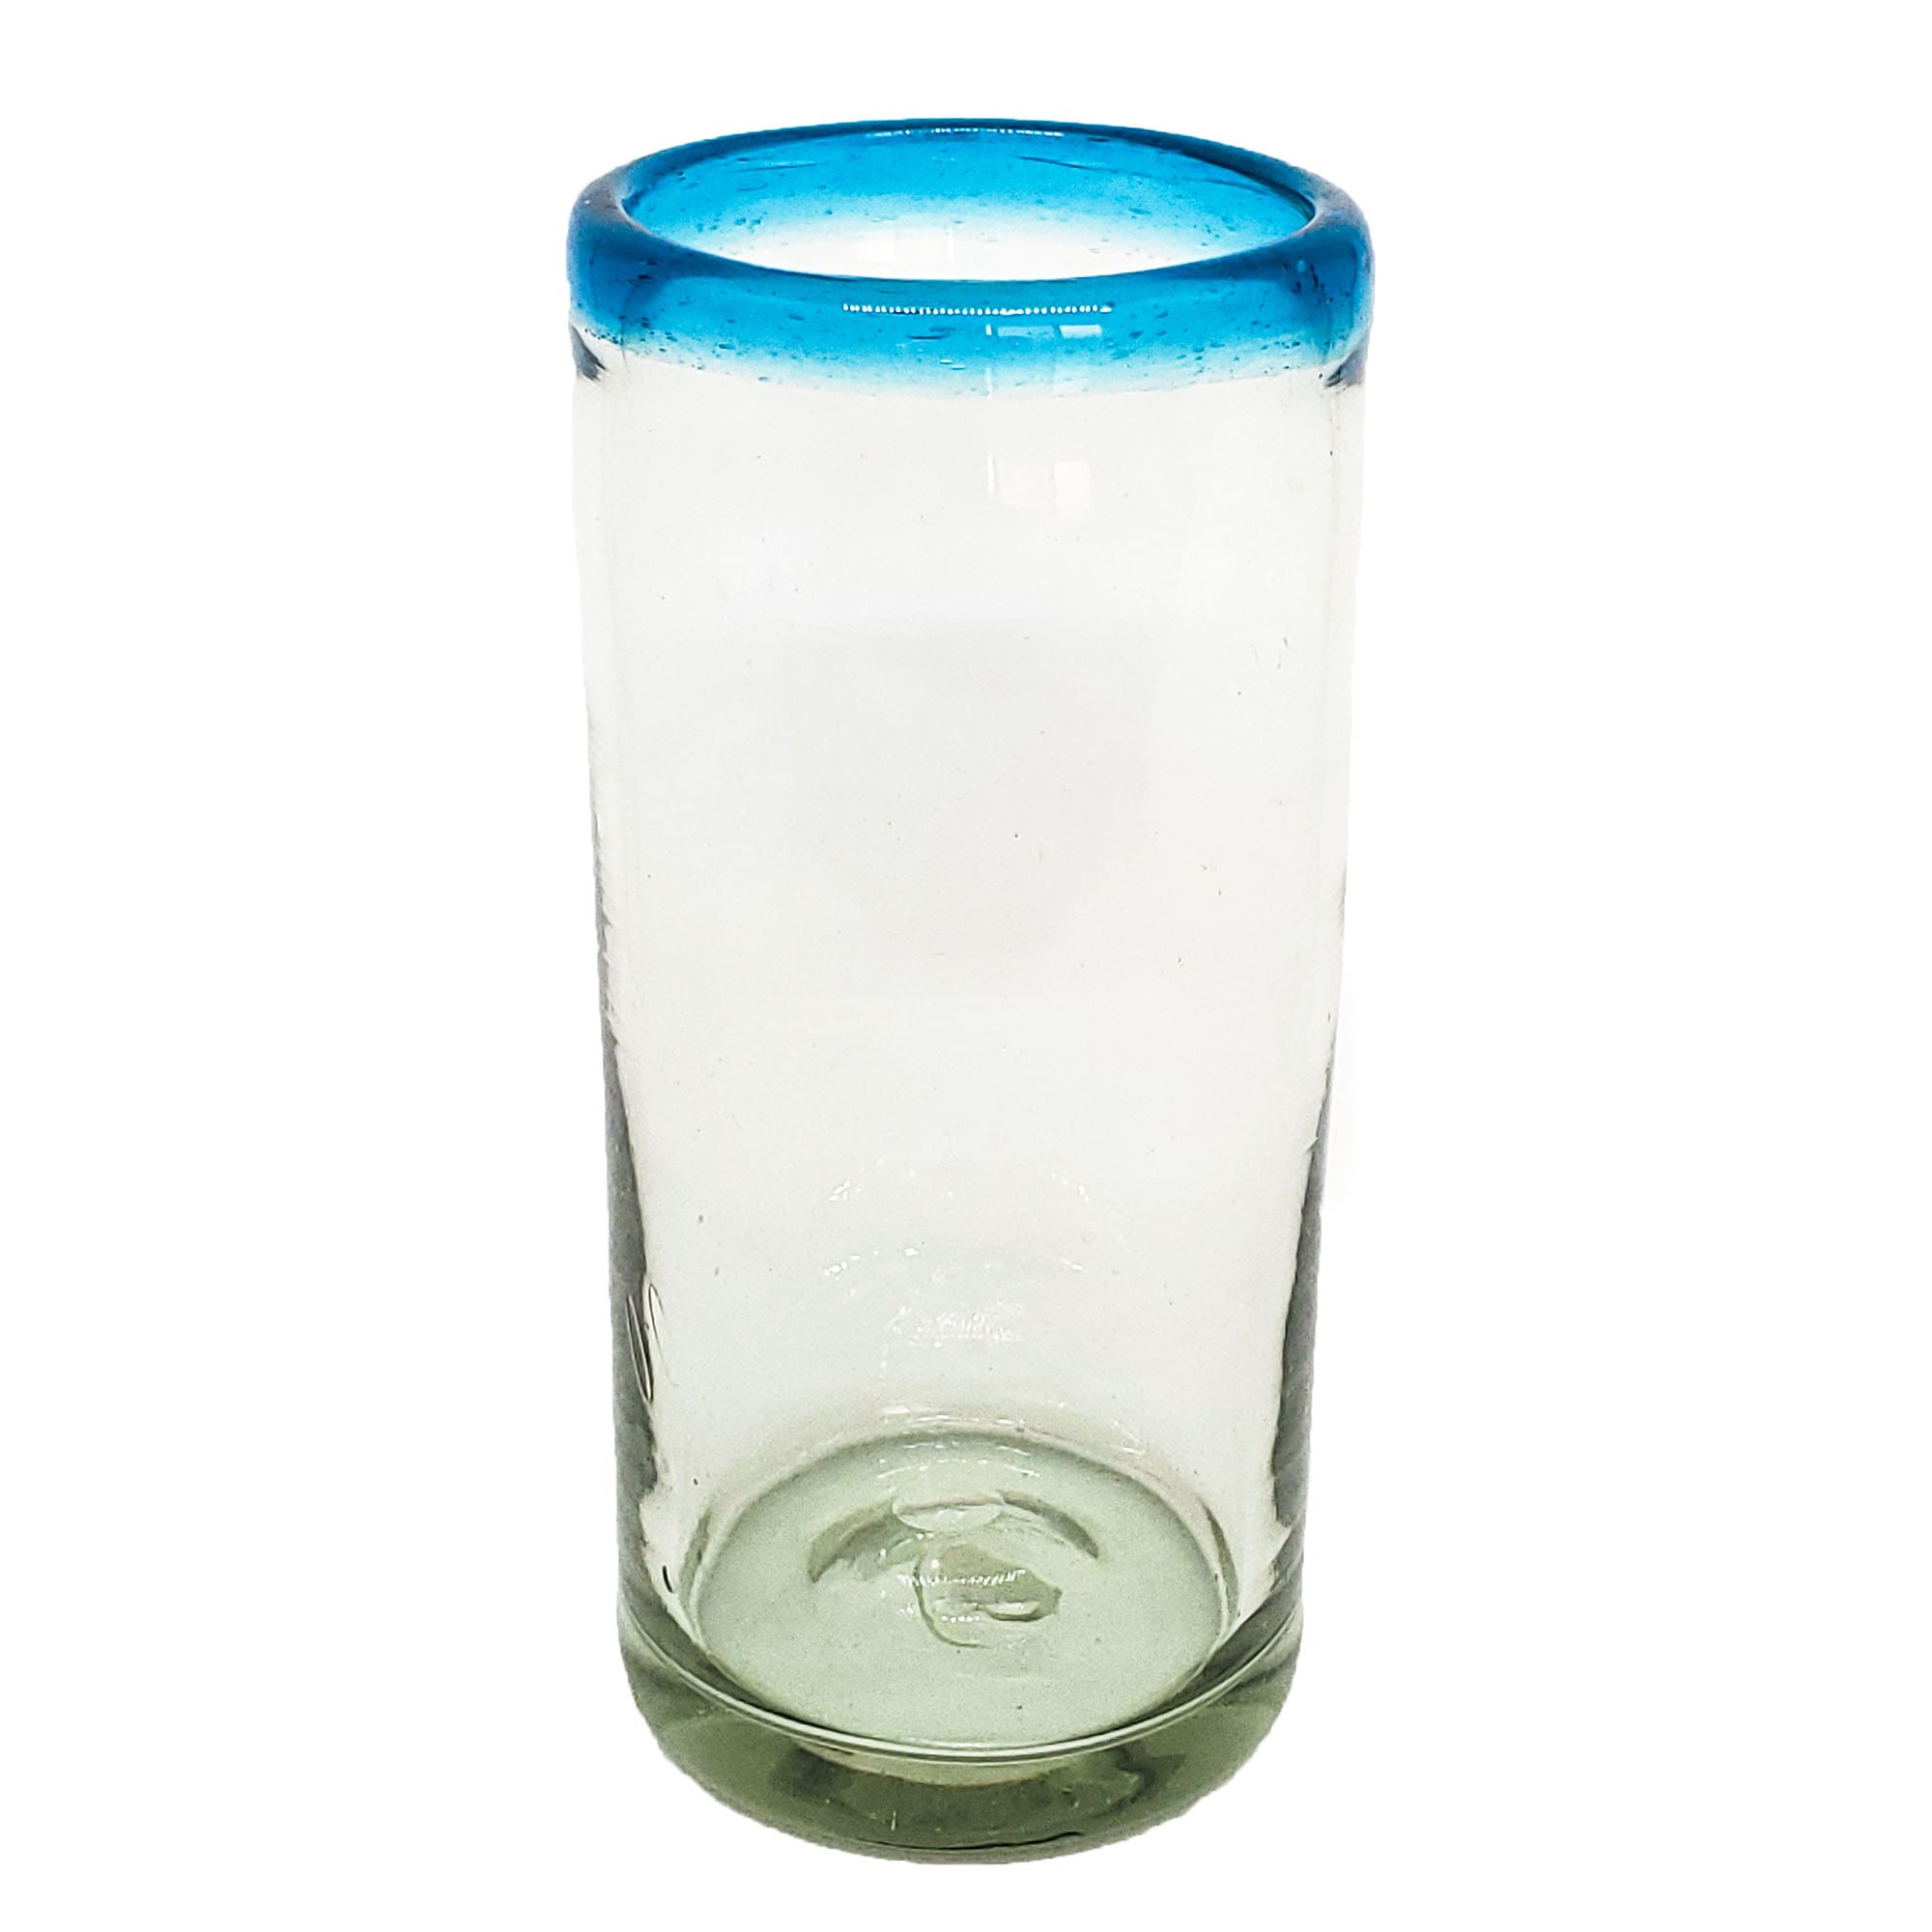 MEXICAN GLASSWARE / Aqua Blue Rim 20 oz Tall Iced Tea Glasses (set of 6)